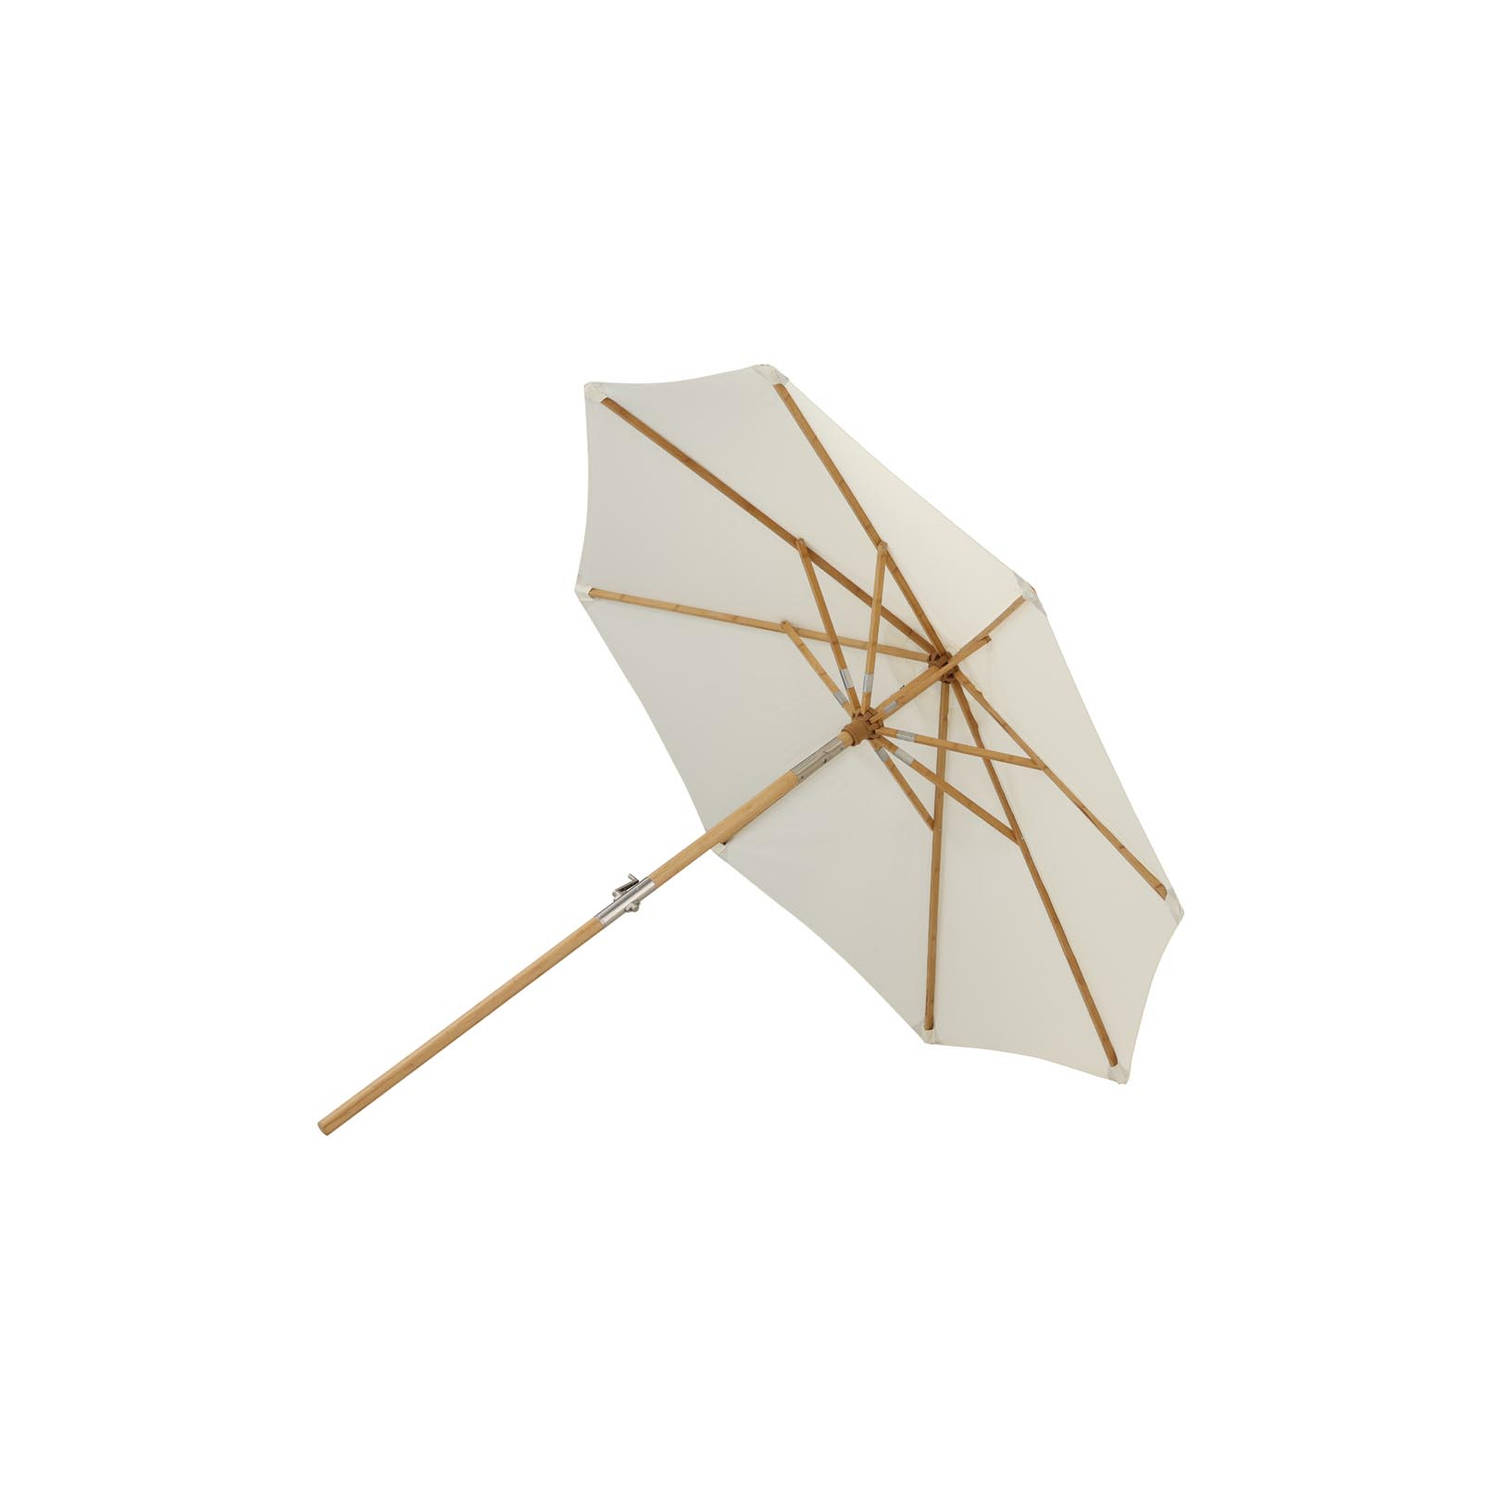 Cerox parasol met kantelfunctie wit.